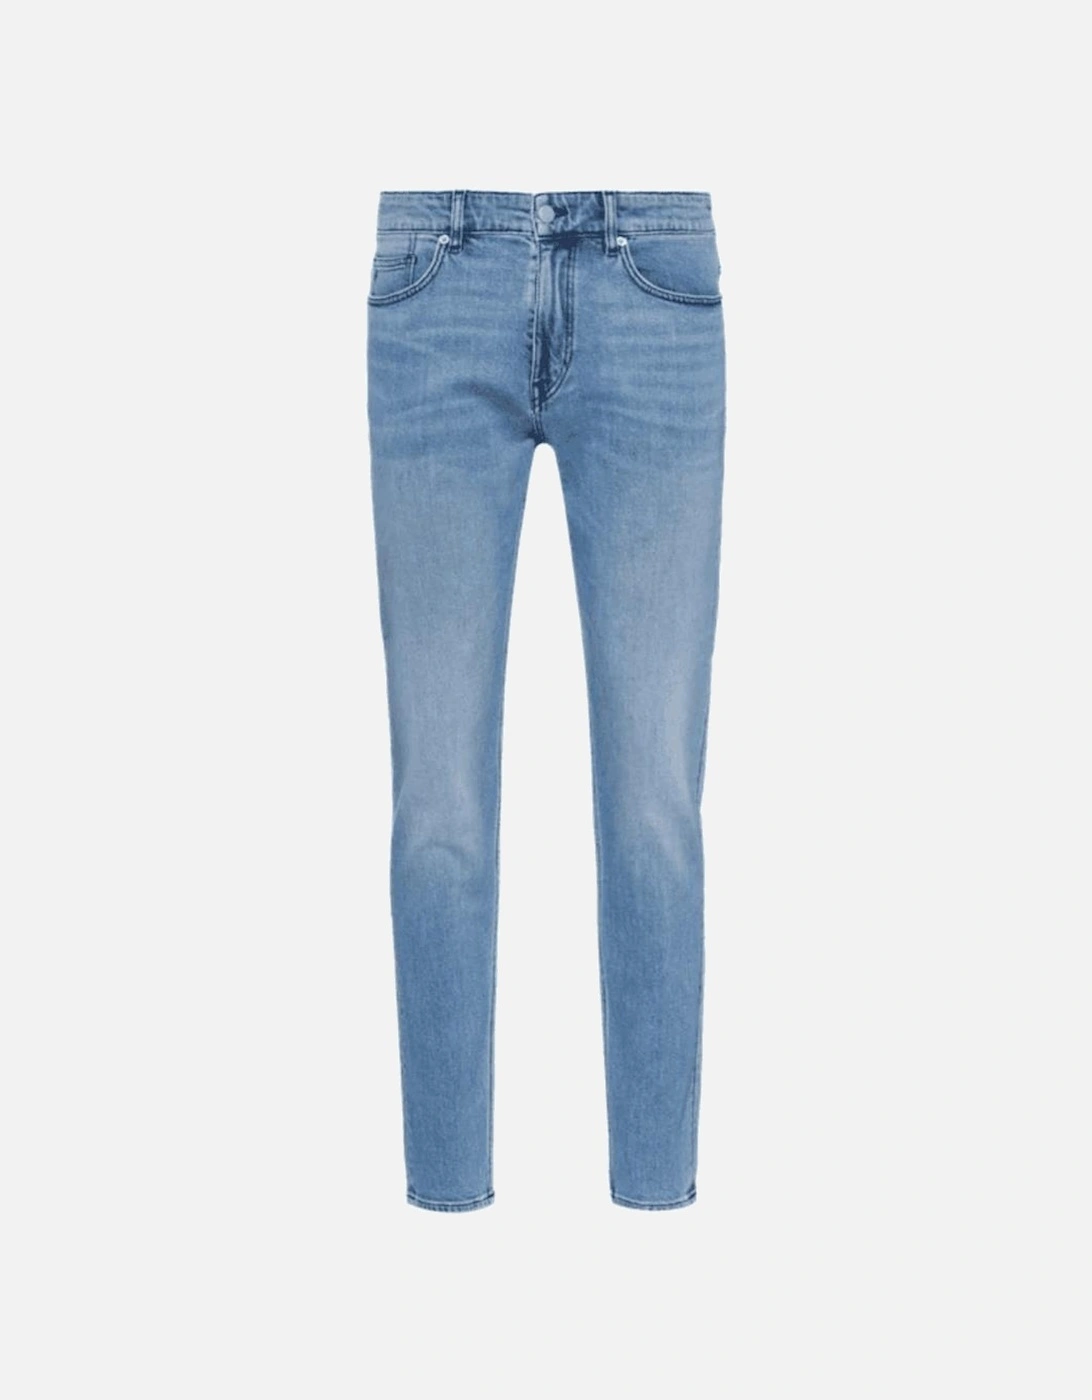 Delano Slim Fit Light Wash Blue Jeans, 2 of 1